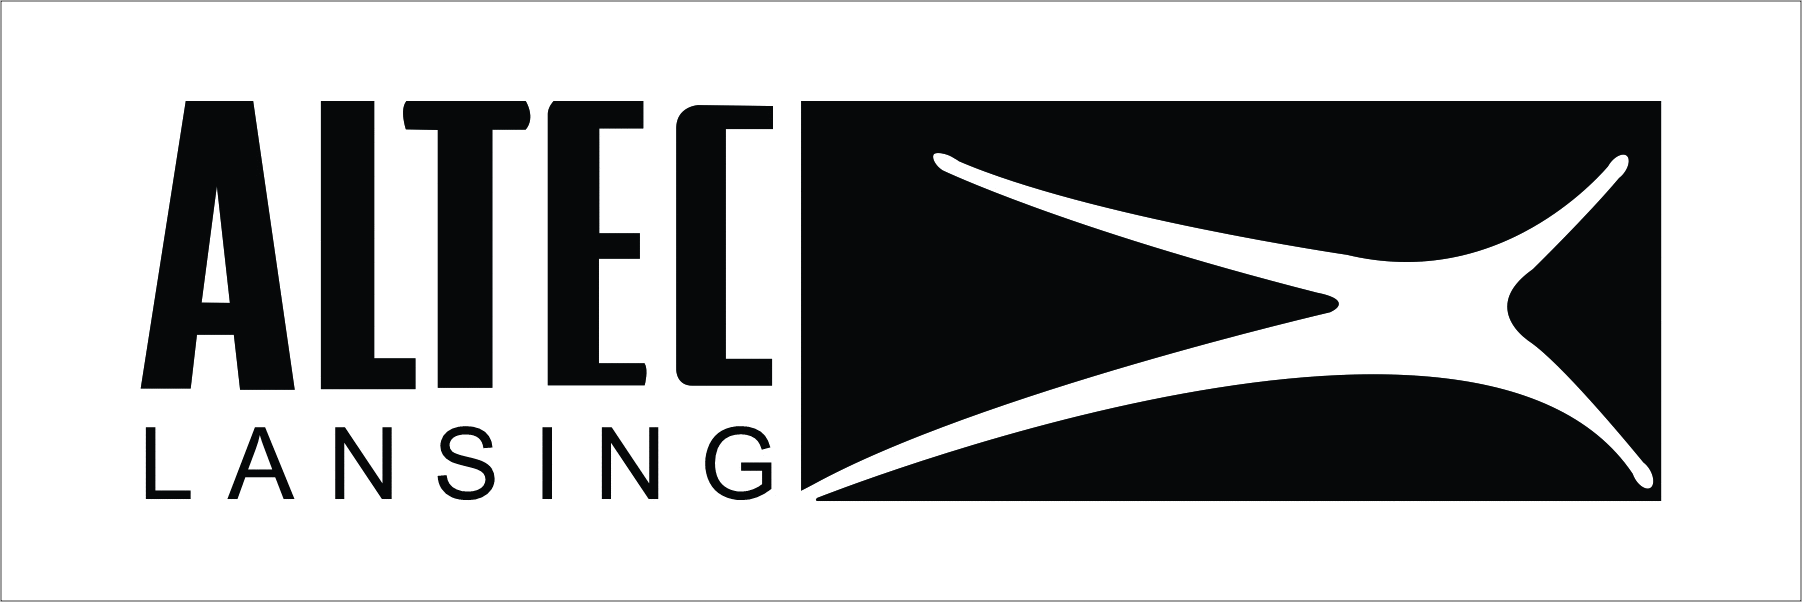 altec-lansing logo